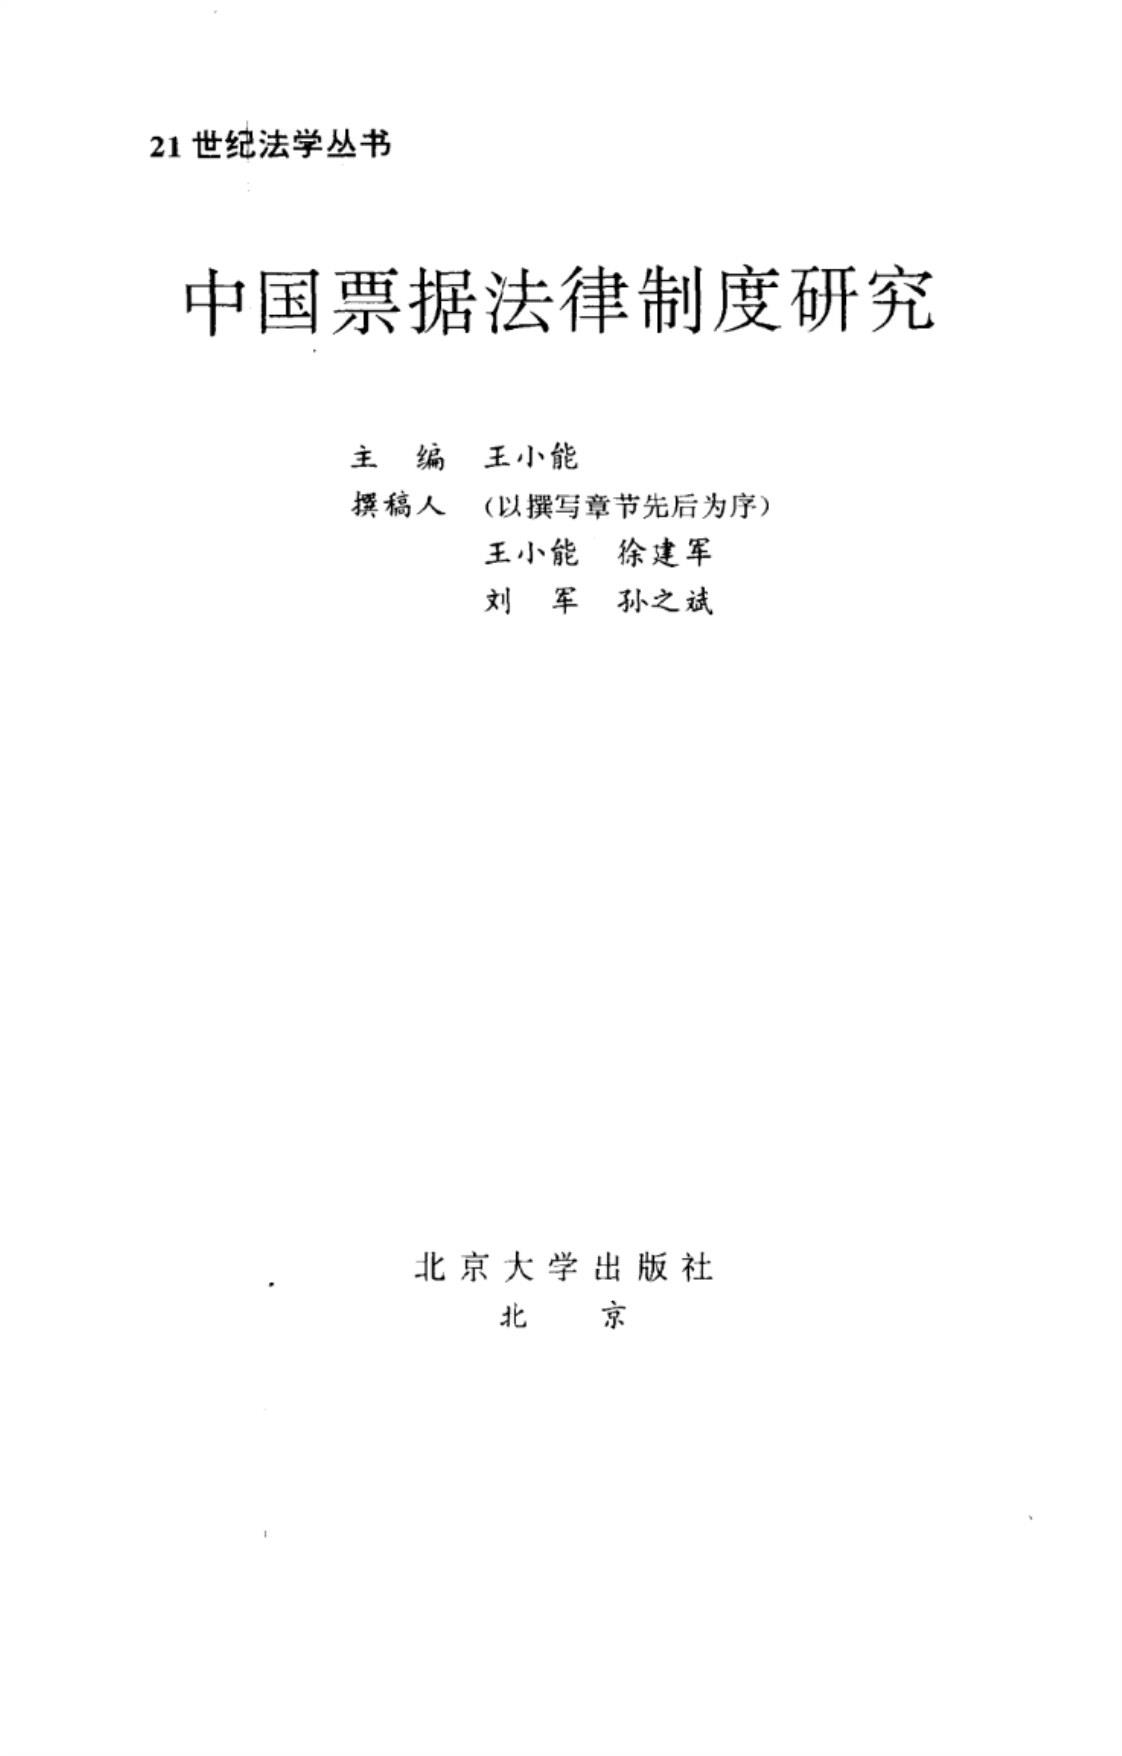 [中国票据法律制度研究][王小能(著)]高清PDF电子书下载